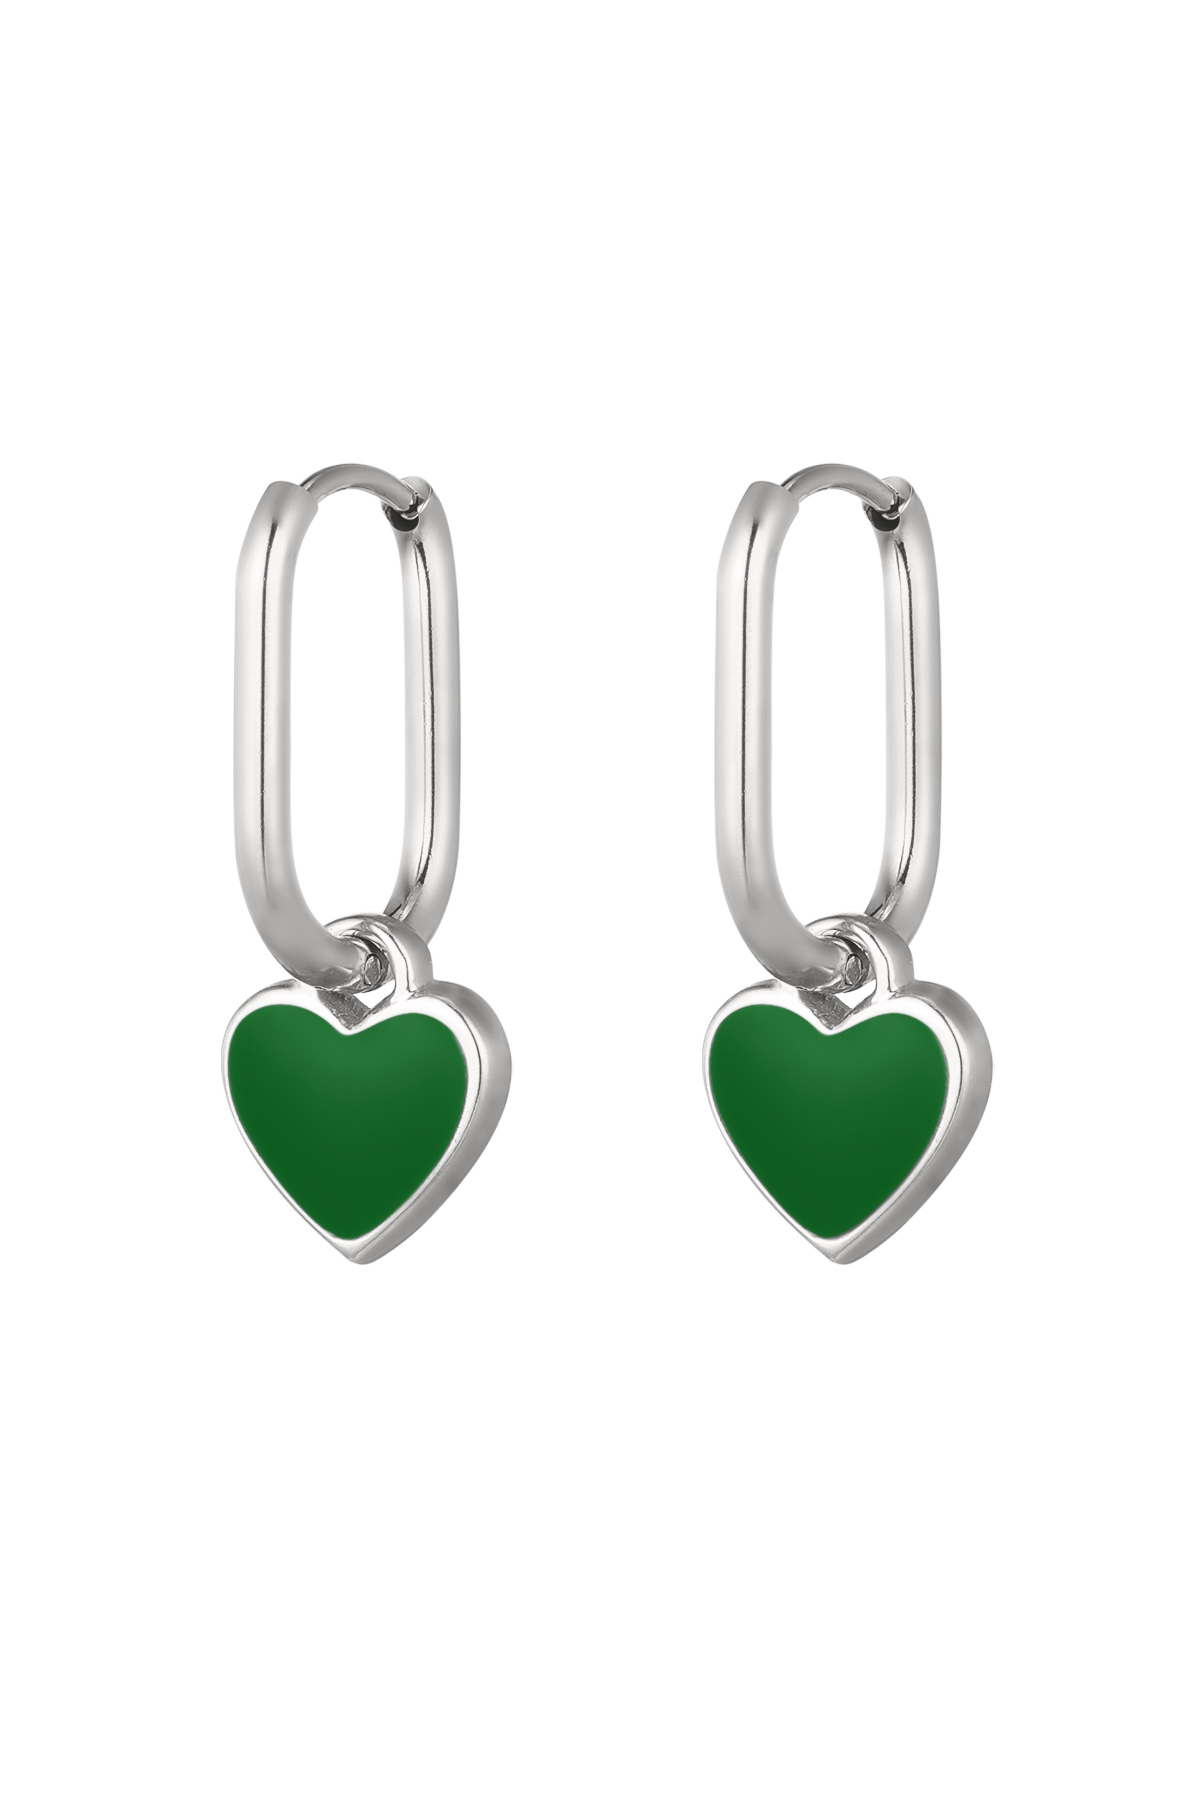 Renkli kalp küpeler Yeşil/gümüş Paslanmaz Çelik 